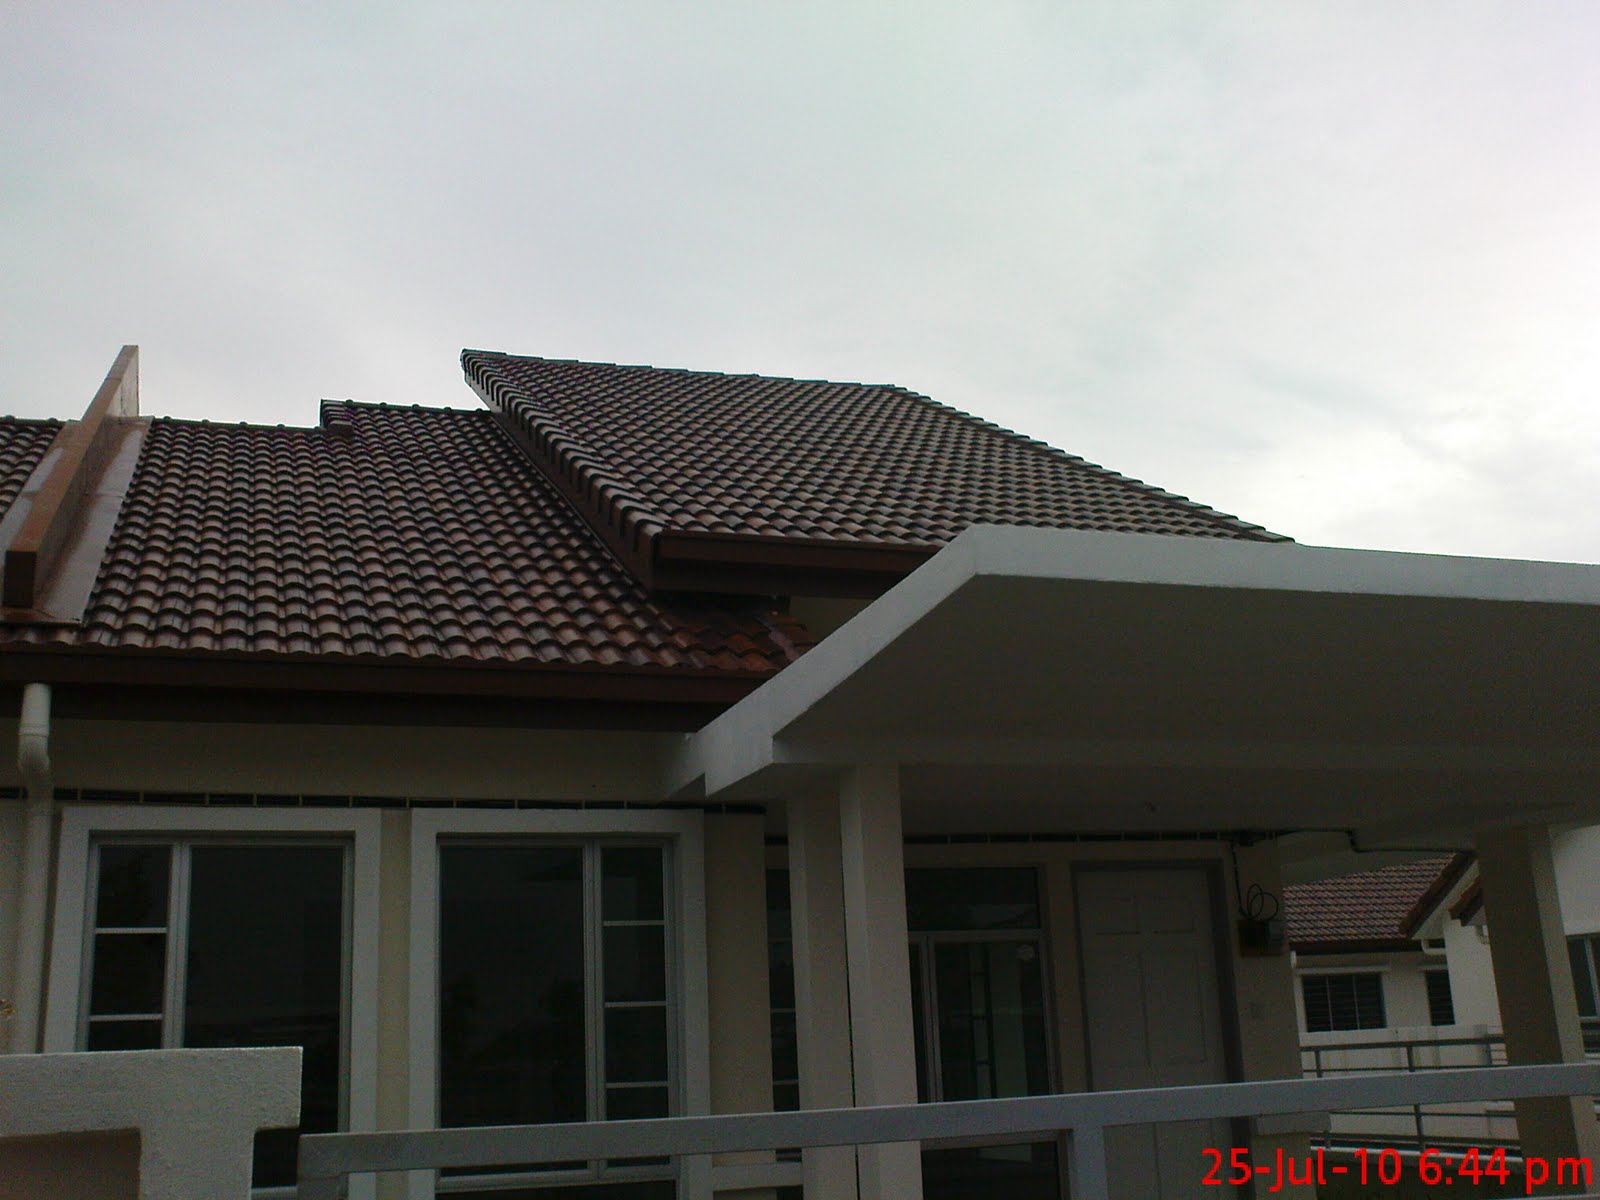 kerdipanbintang owhh suka bertenggek atas bumbung rumah 